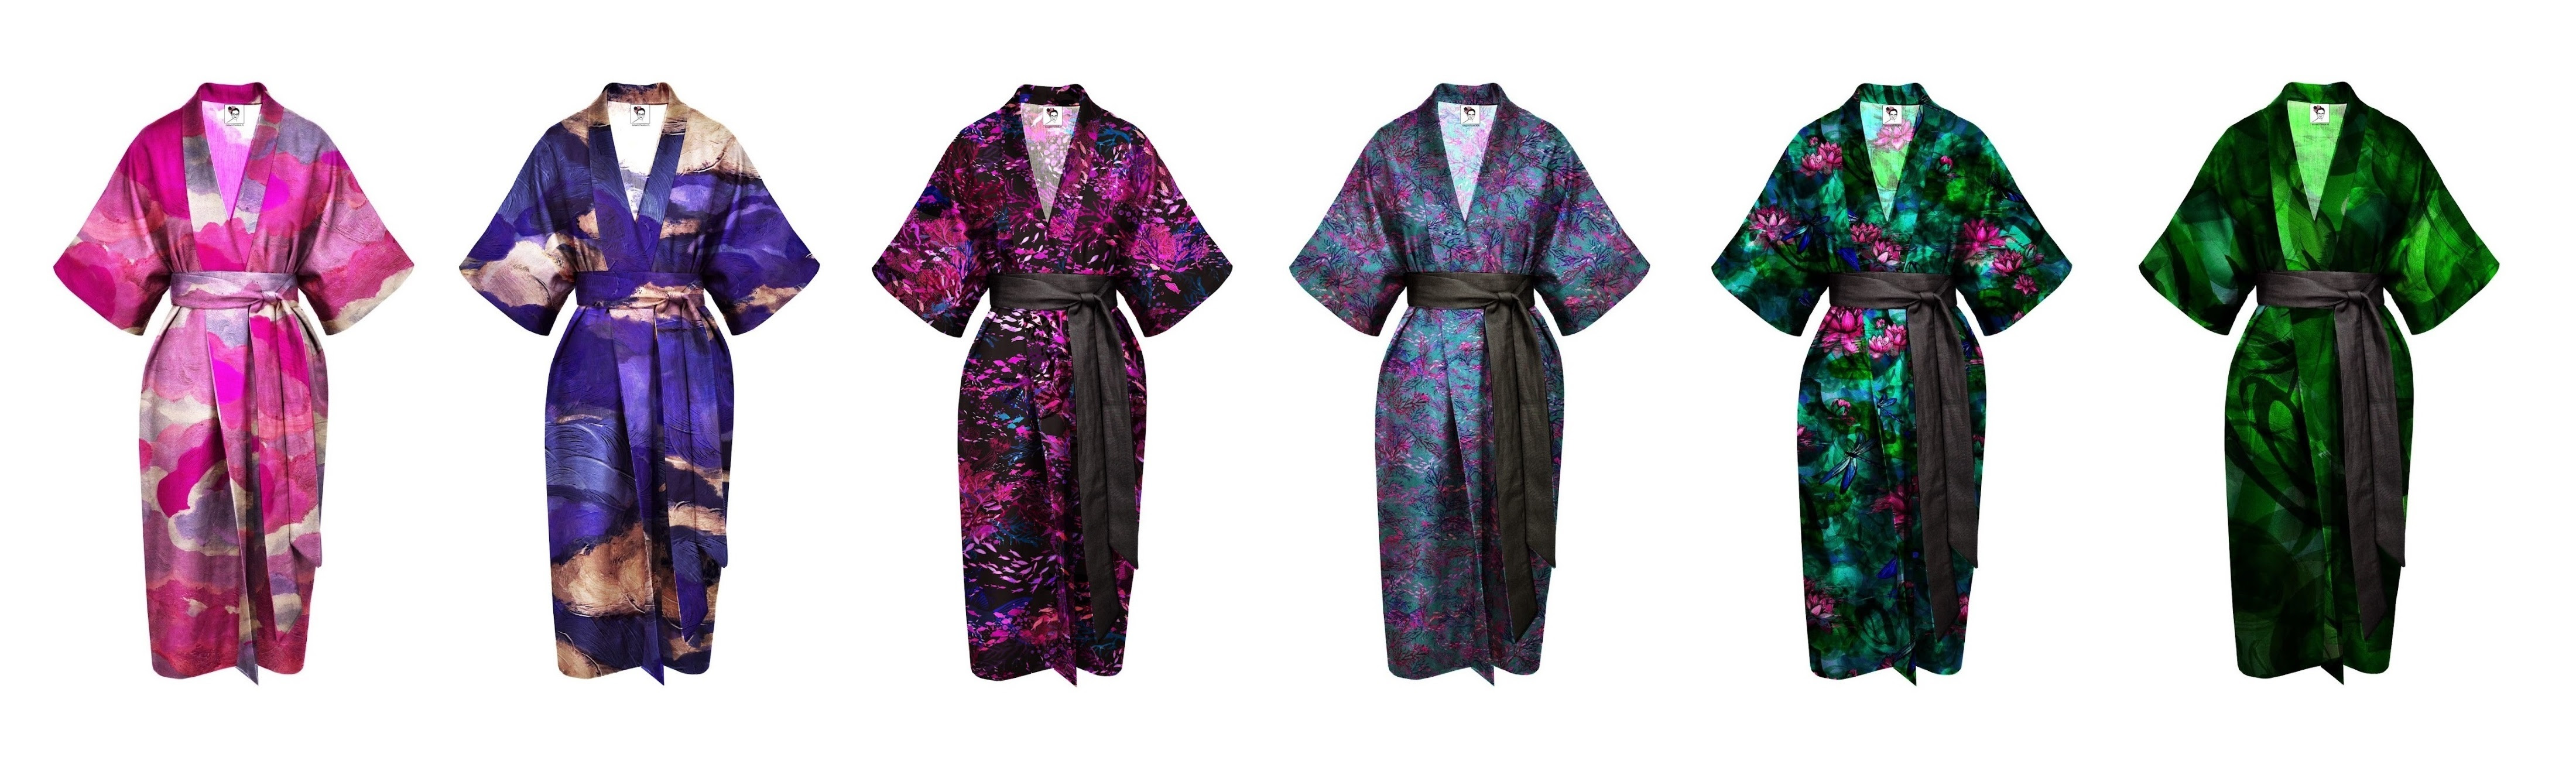 dostępne kimona  wprzedsprzedaży